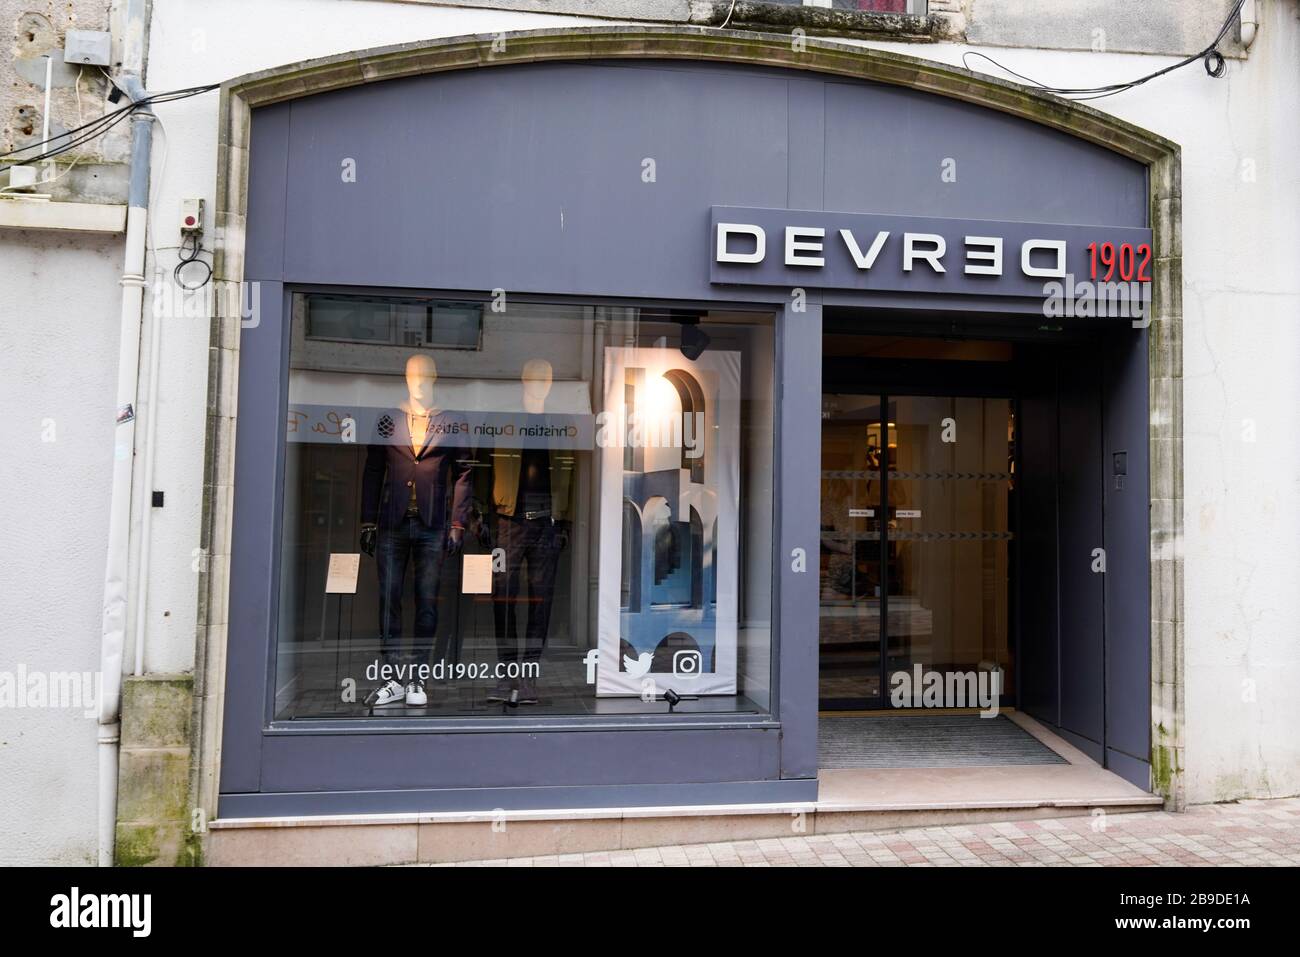 Bordeaux , Aquitaine / France - 02 21 2020 : Devred 1902 logo man brand  Clothing Store sign men shop Stock Photo - Alamy